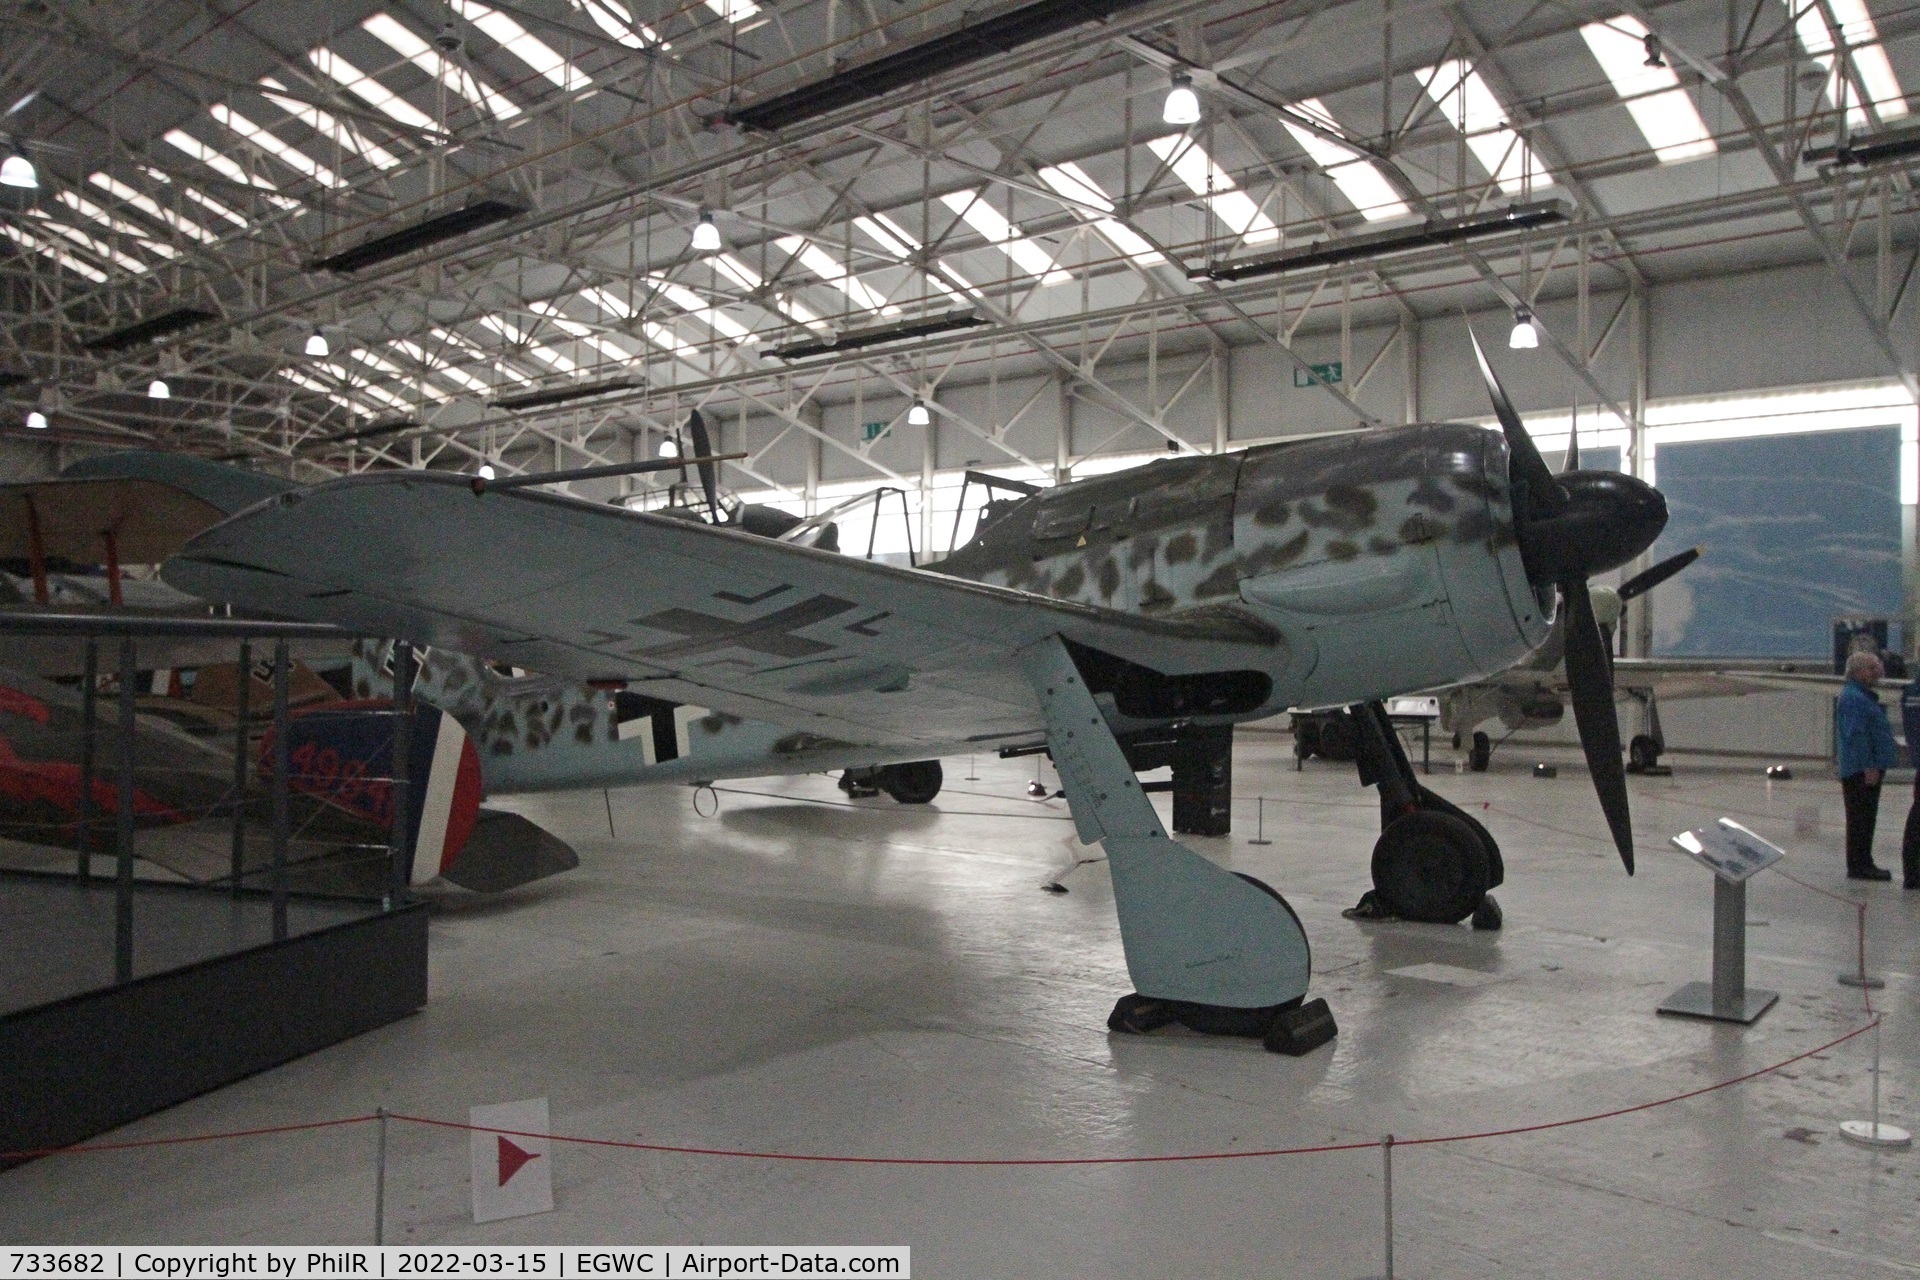 733682, 1944 Focke-Wulf Fw-190A-8 C/N 733682, 733682 1944 Focke-Wulf FW190A-8 R6 Luftwaffe Cosford Aerospace Museum